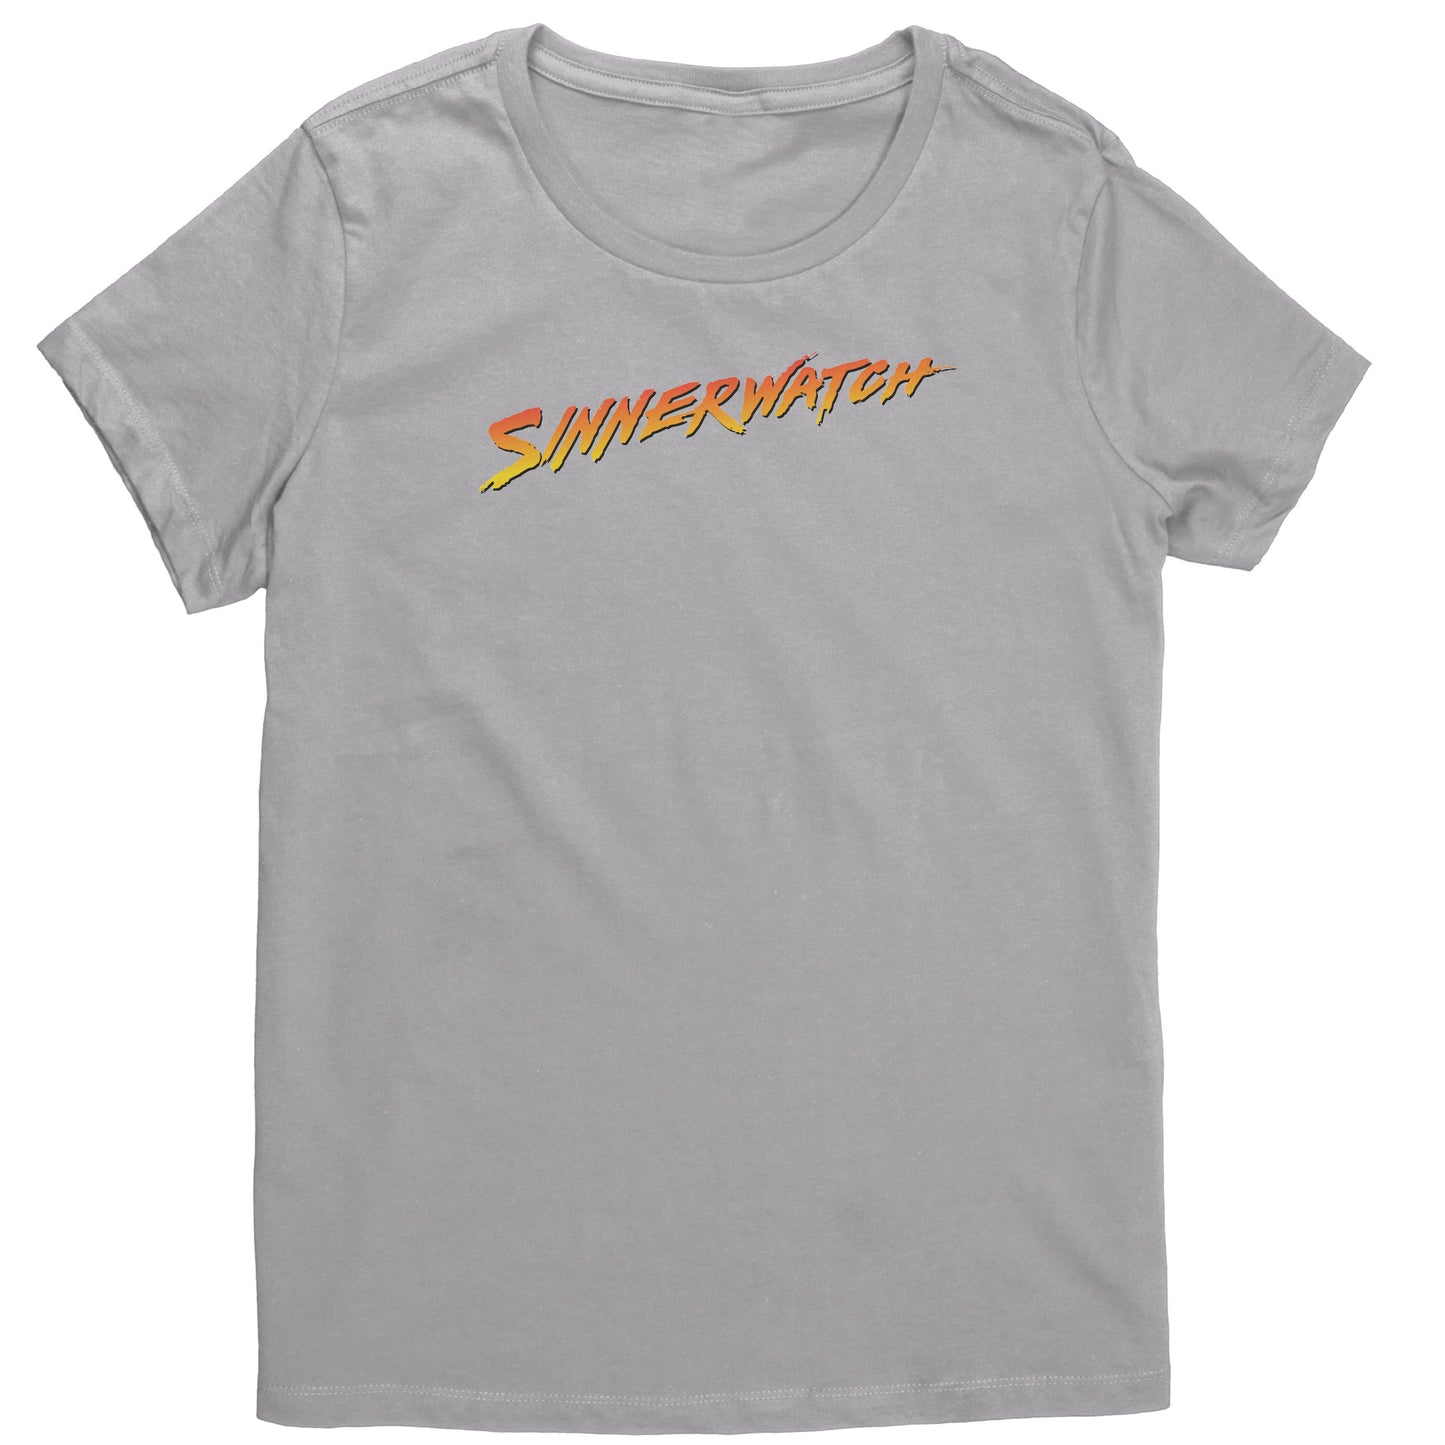 Sinnerwatch Women's T-Shirt